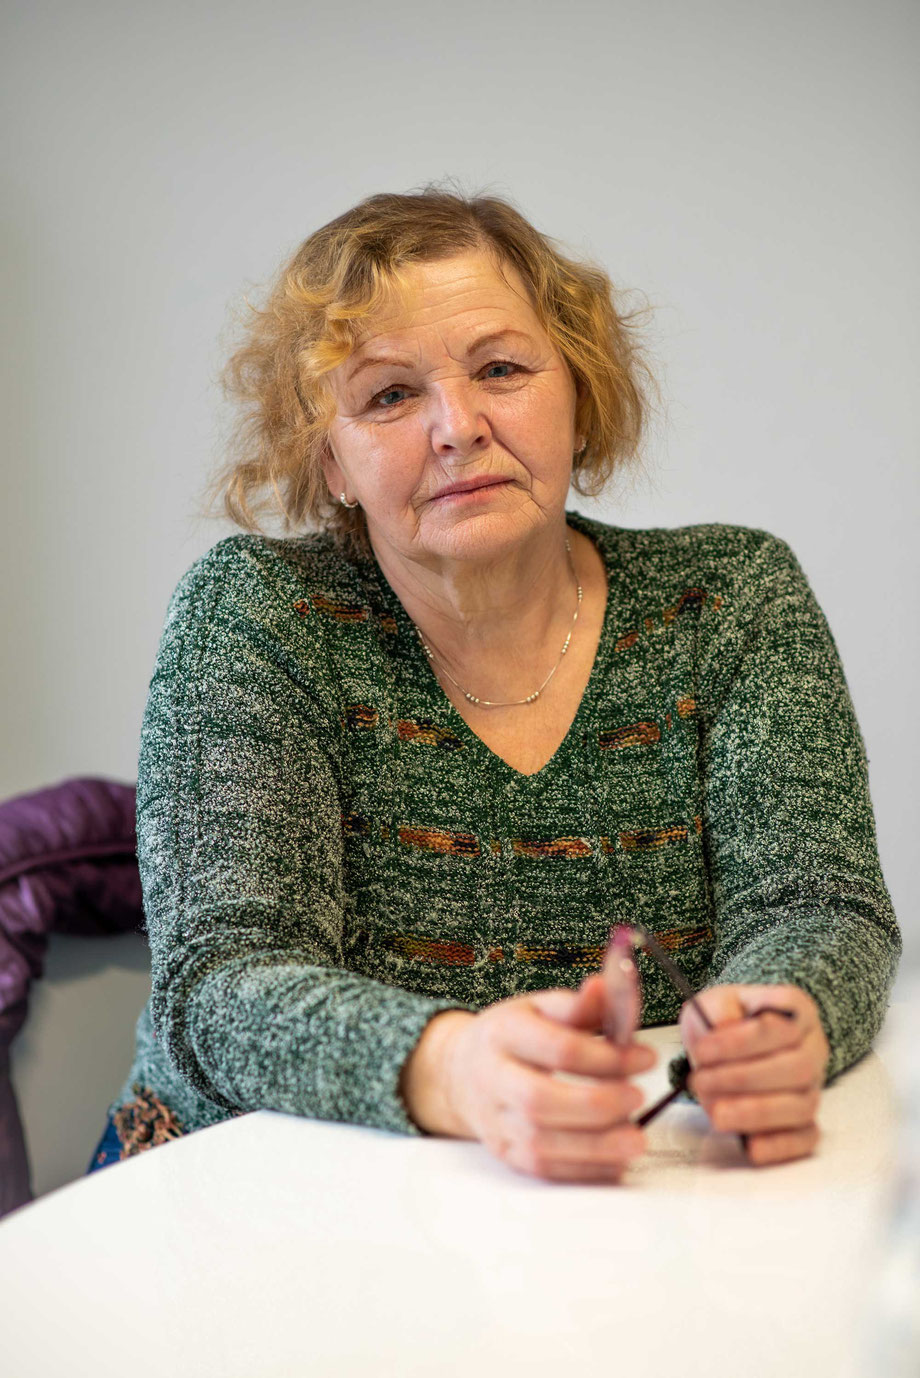 Anita Sproğe betreut eine betagte Frau. Dafür kommt sie jeweils für ein paar Monate von Lettland in die Schweiz (© Bild: ts)